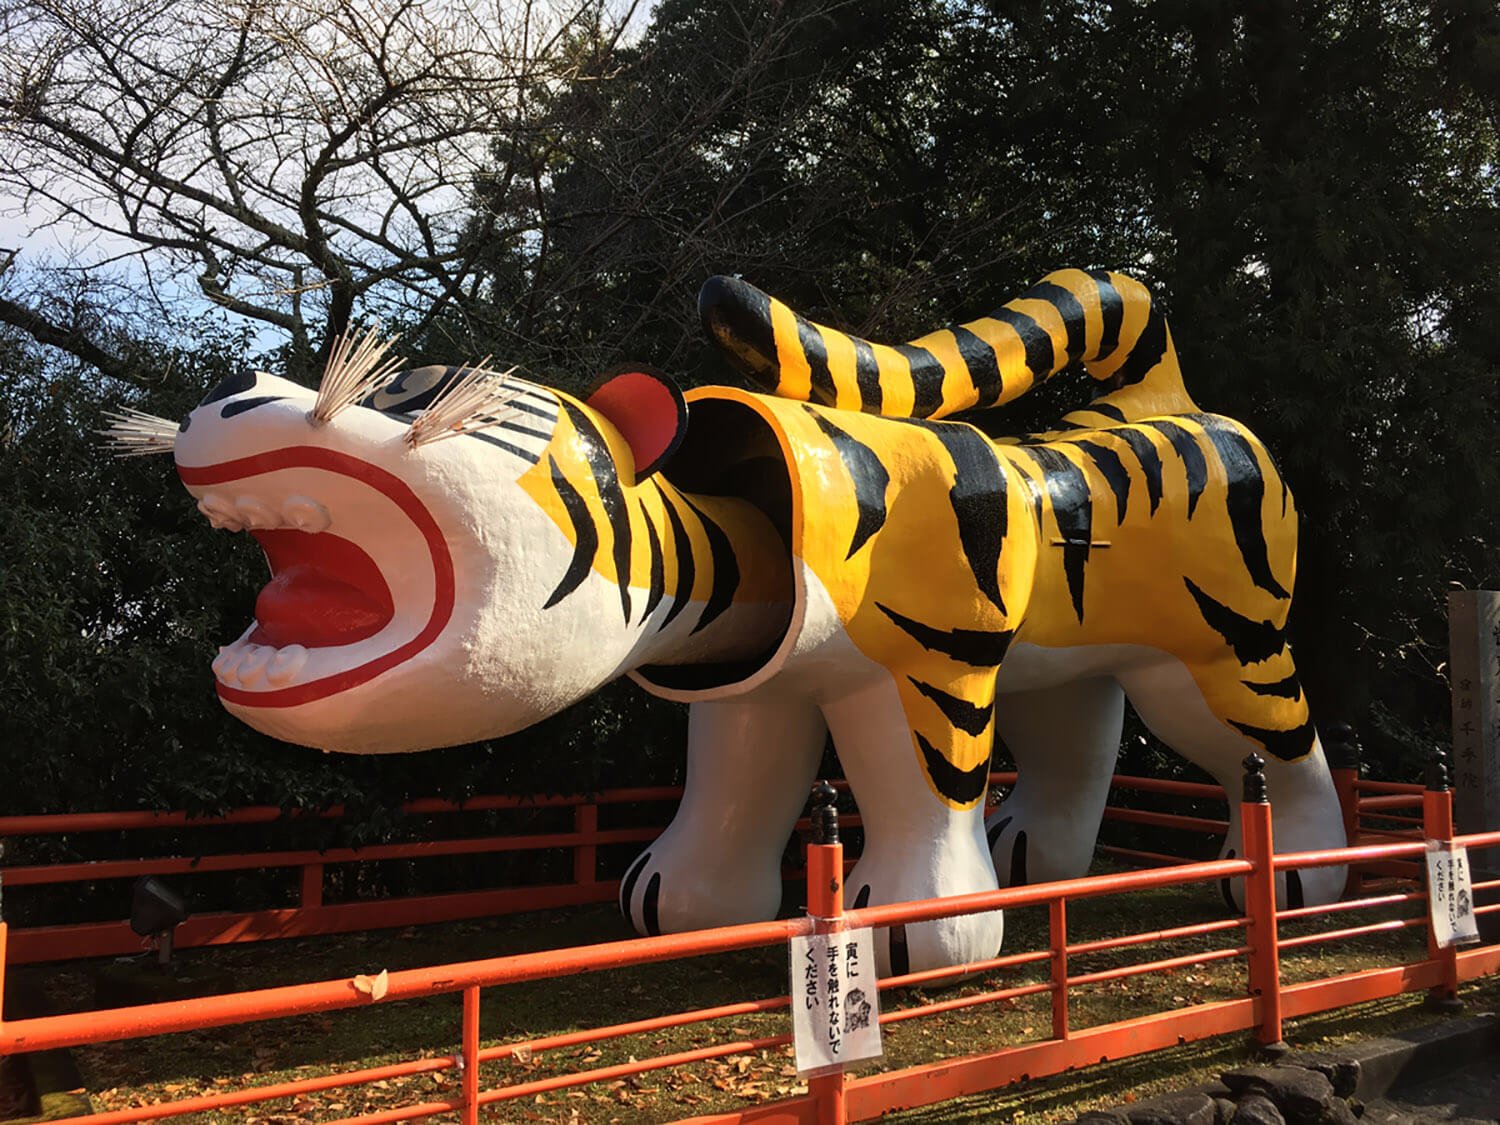 関西方面の方におすすめしたいのは、奈良・生駒にある信貴山朝護孫子寺。境内の至るところにトラがいる。 入り口にも巨大な張子のトラが。